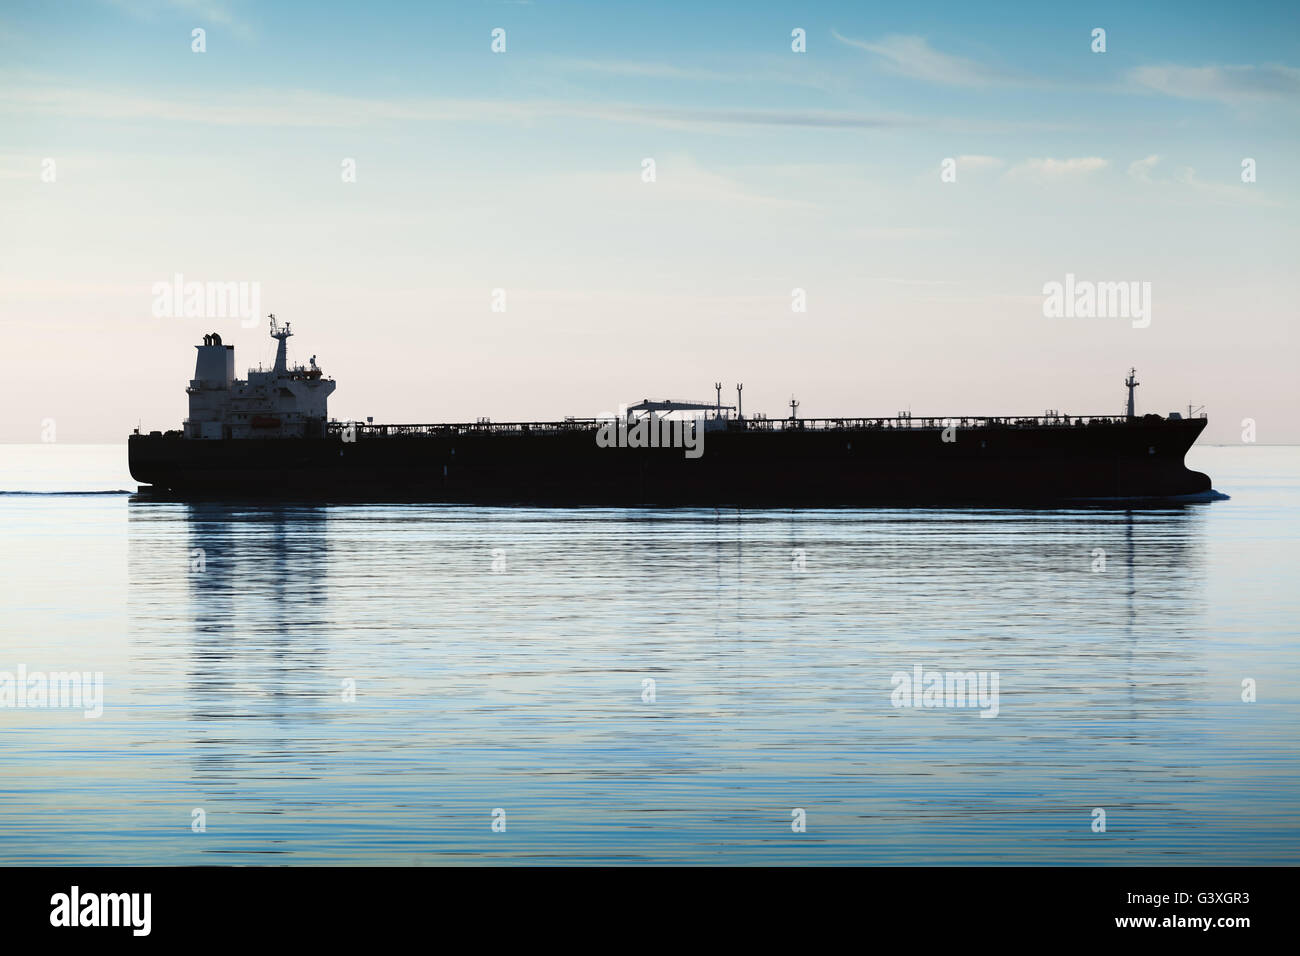 Große industrielle Tanker Schiff geht auf noch Meerwasser, Silhouette Foto, natürlichen Gegenlicht Effekt Stockfoto